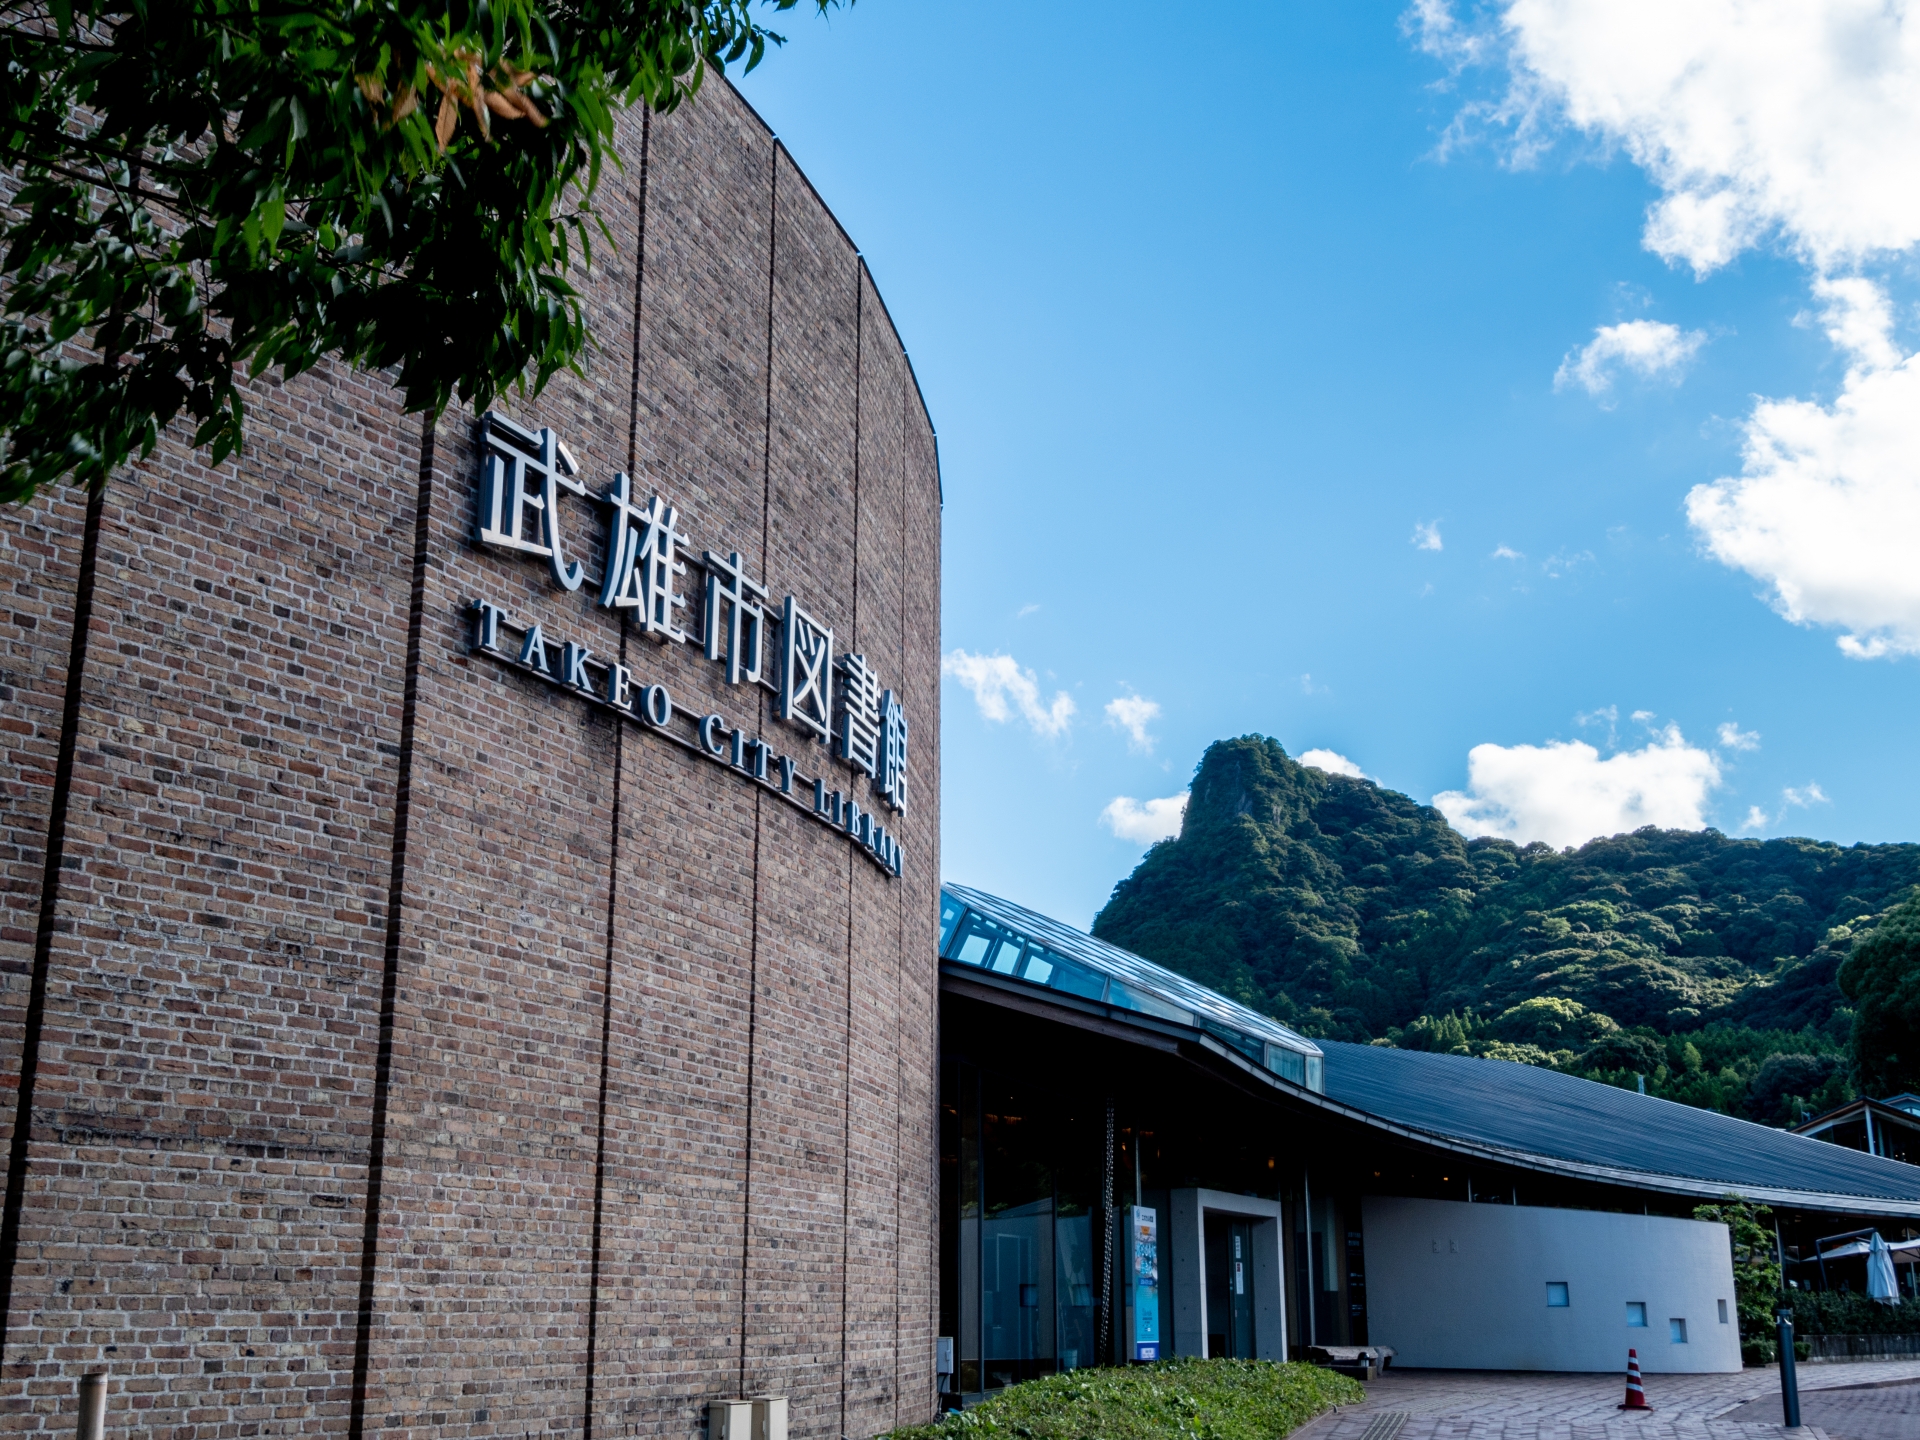 佐賀県武雄市の「武雄市図書館・歴史資料館」。「市民の生活をより豊かにする図書館」がコンセプト、洗練されたデザインにも注目です